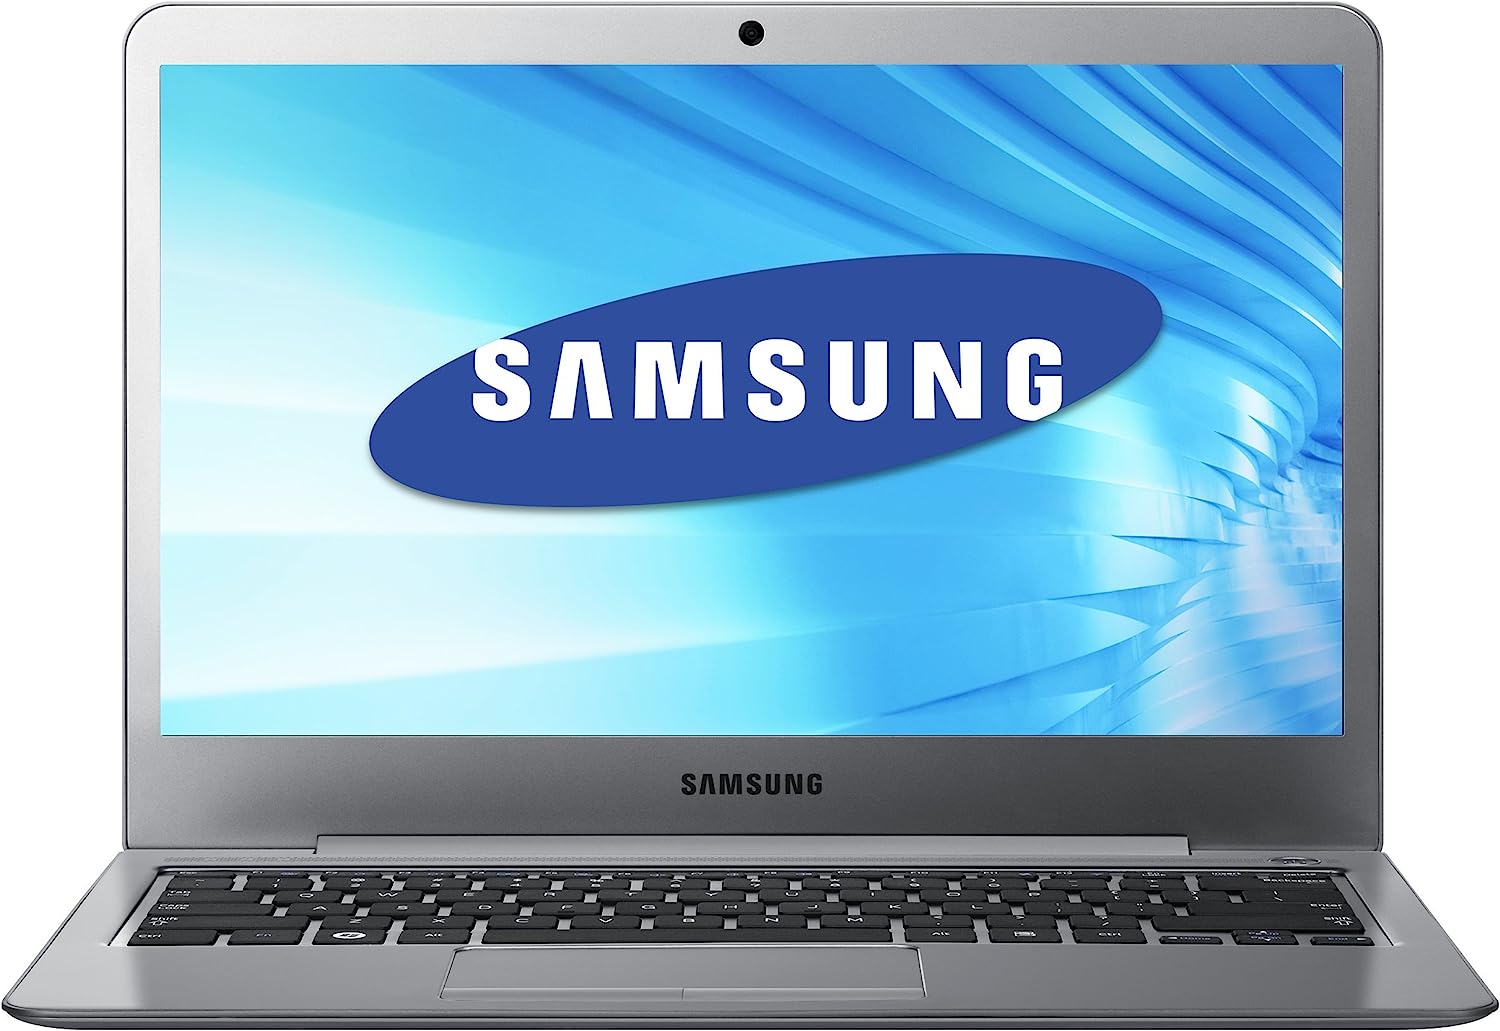 Samsung Series 5 Ultrabook NP530U4B Notebook